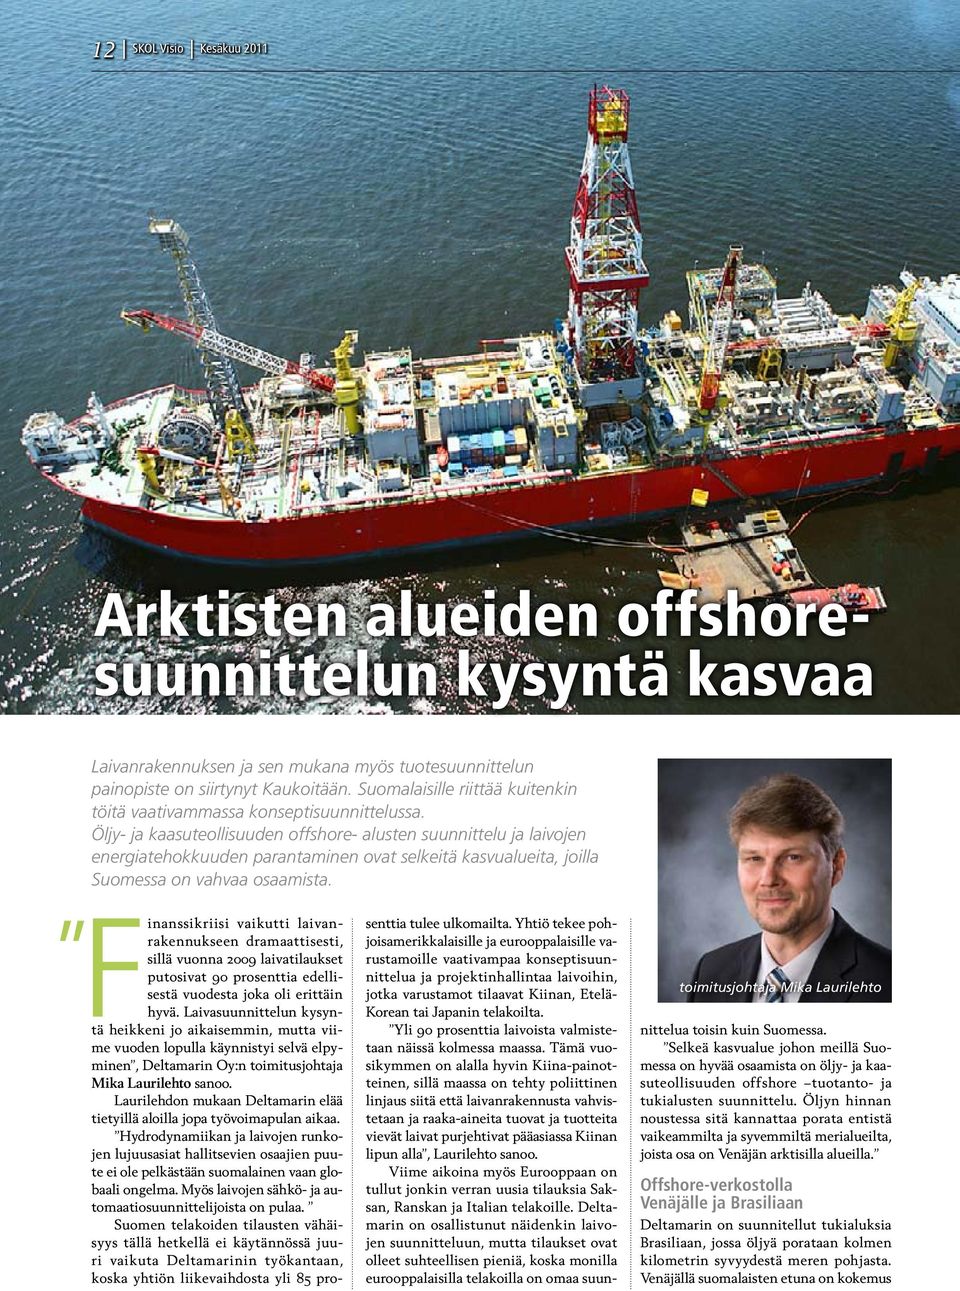 Öljy- ja kaasuteollisuuden offshore- alusten suunnittelu ja laivojen energiatehokkuuden parantaminen ovat selkeitä kasvualueita, joilla Suomessa on vahvaa osaamista.